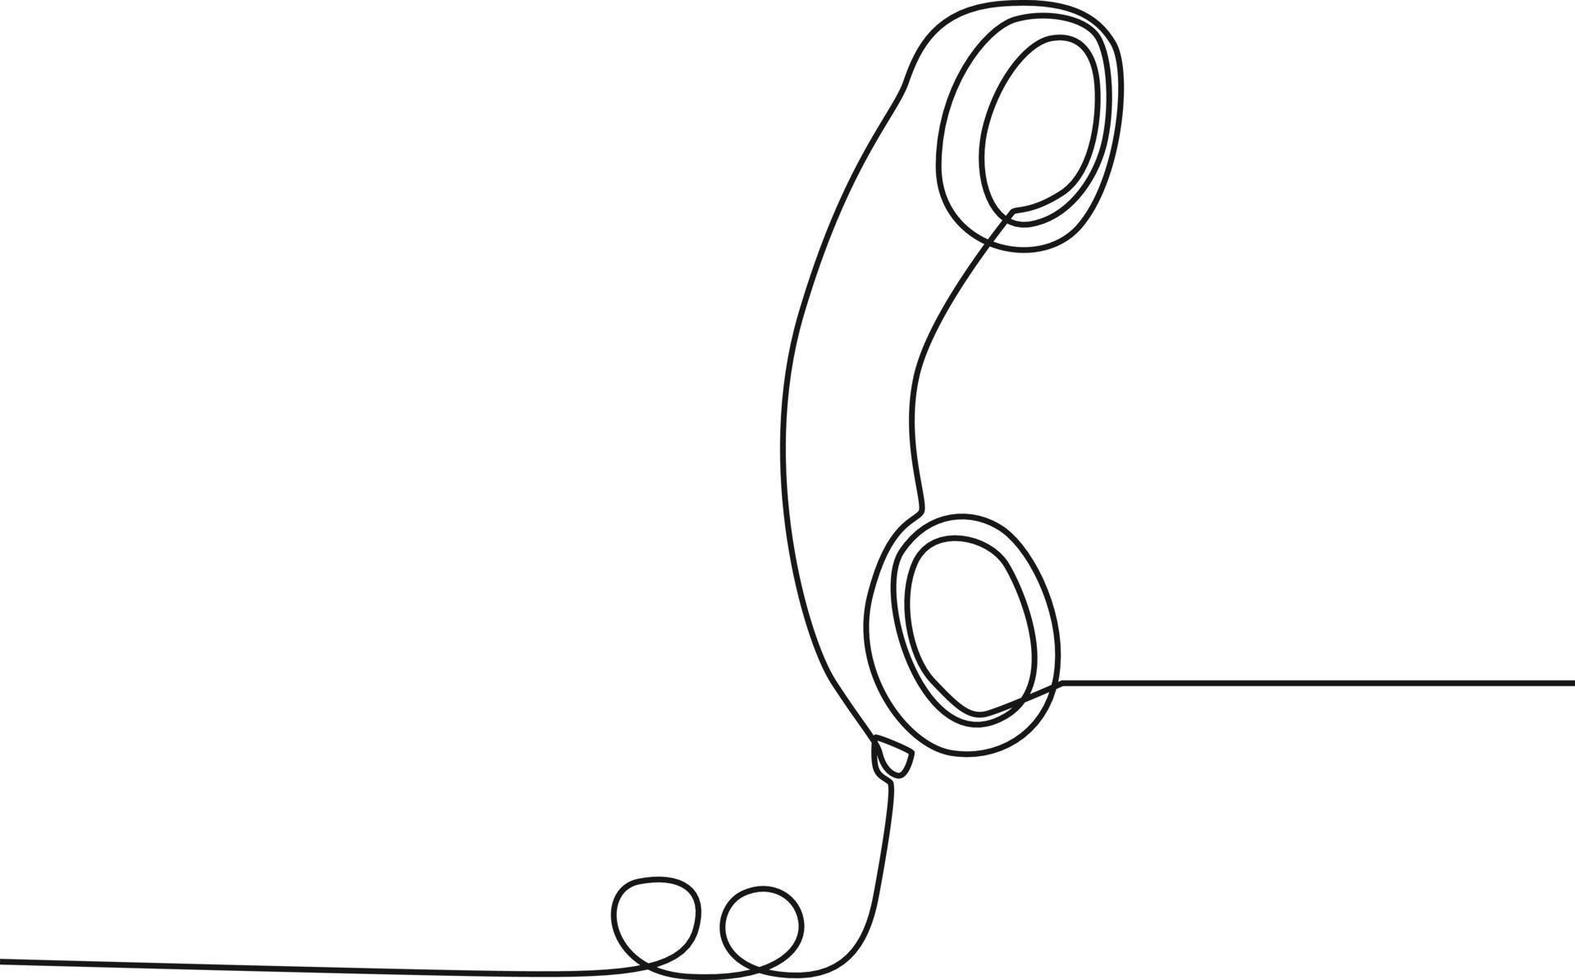 una sola línea continua dibujando el auricular de un teléfono clásico de marcación rotativa. ilustración de vector de diseño gráfico de dibujo de una línea.